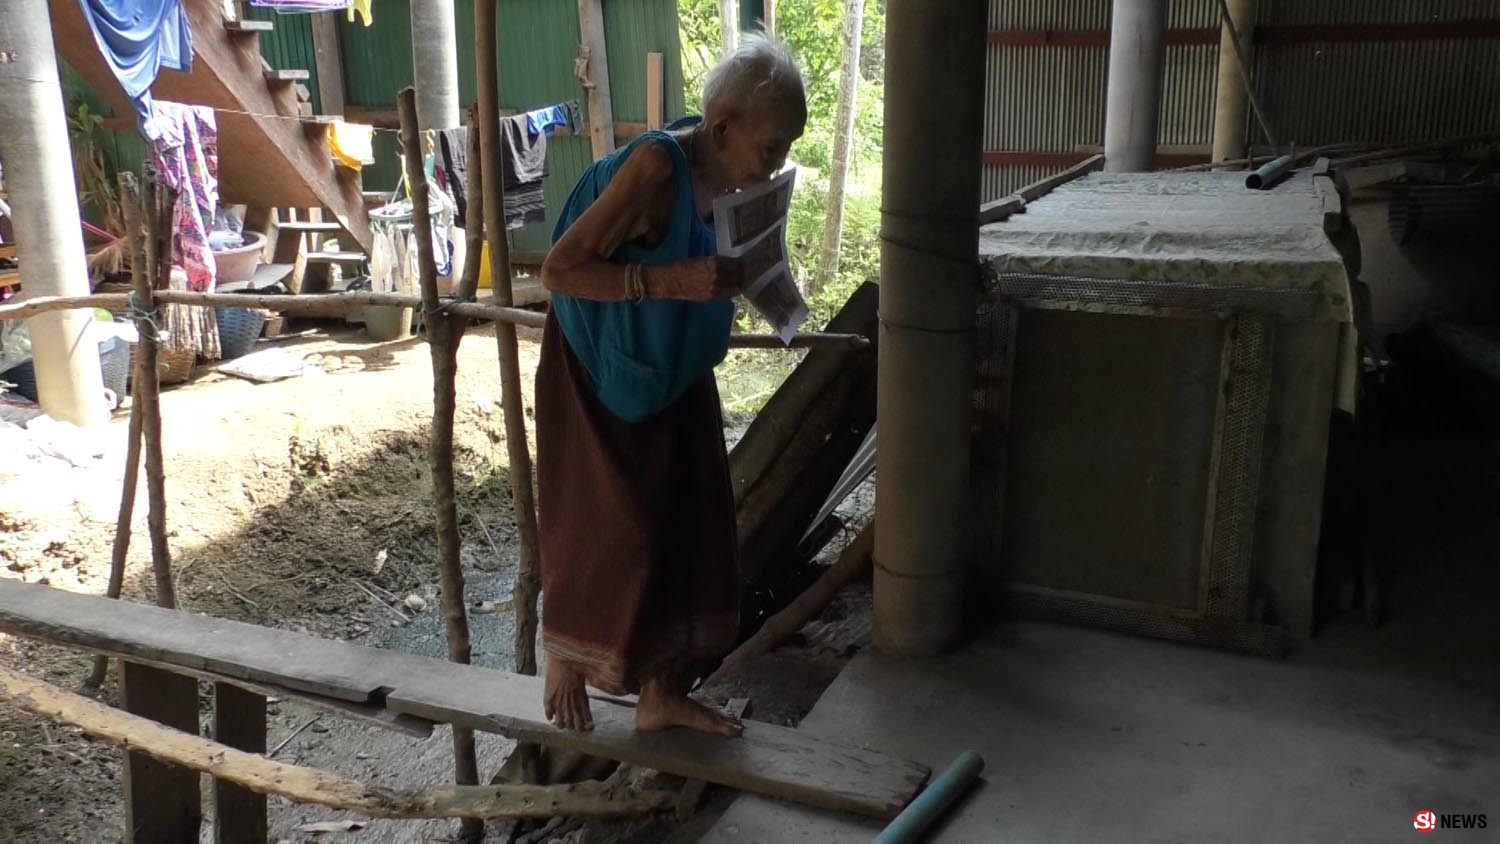 พบคุณยาย 5 แผ่นดิน อายุ 106 ปี เดินคล่องแคล่ว เผยชอบกินข้าวกับน้ำพริกผักต้ม